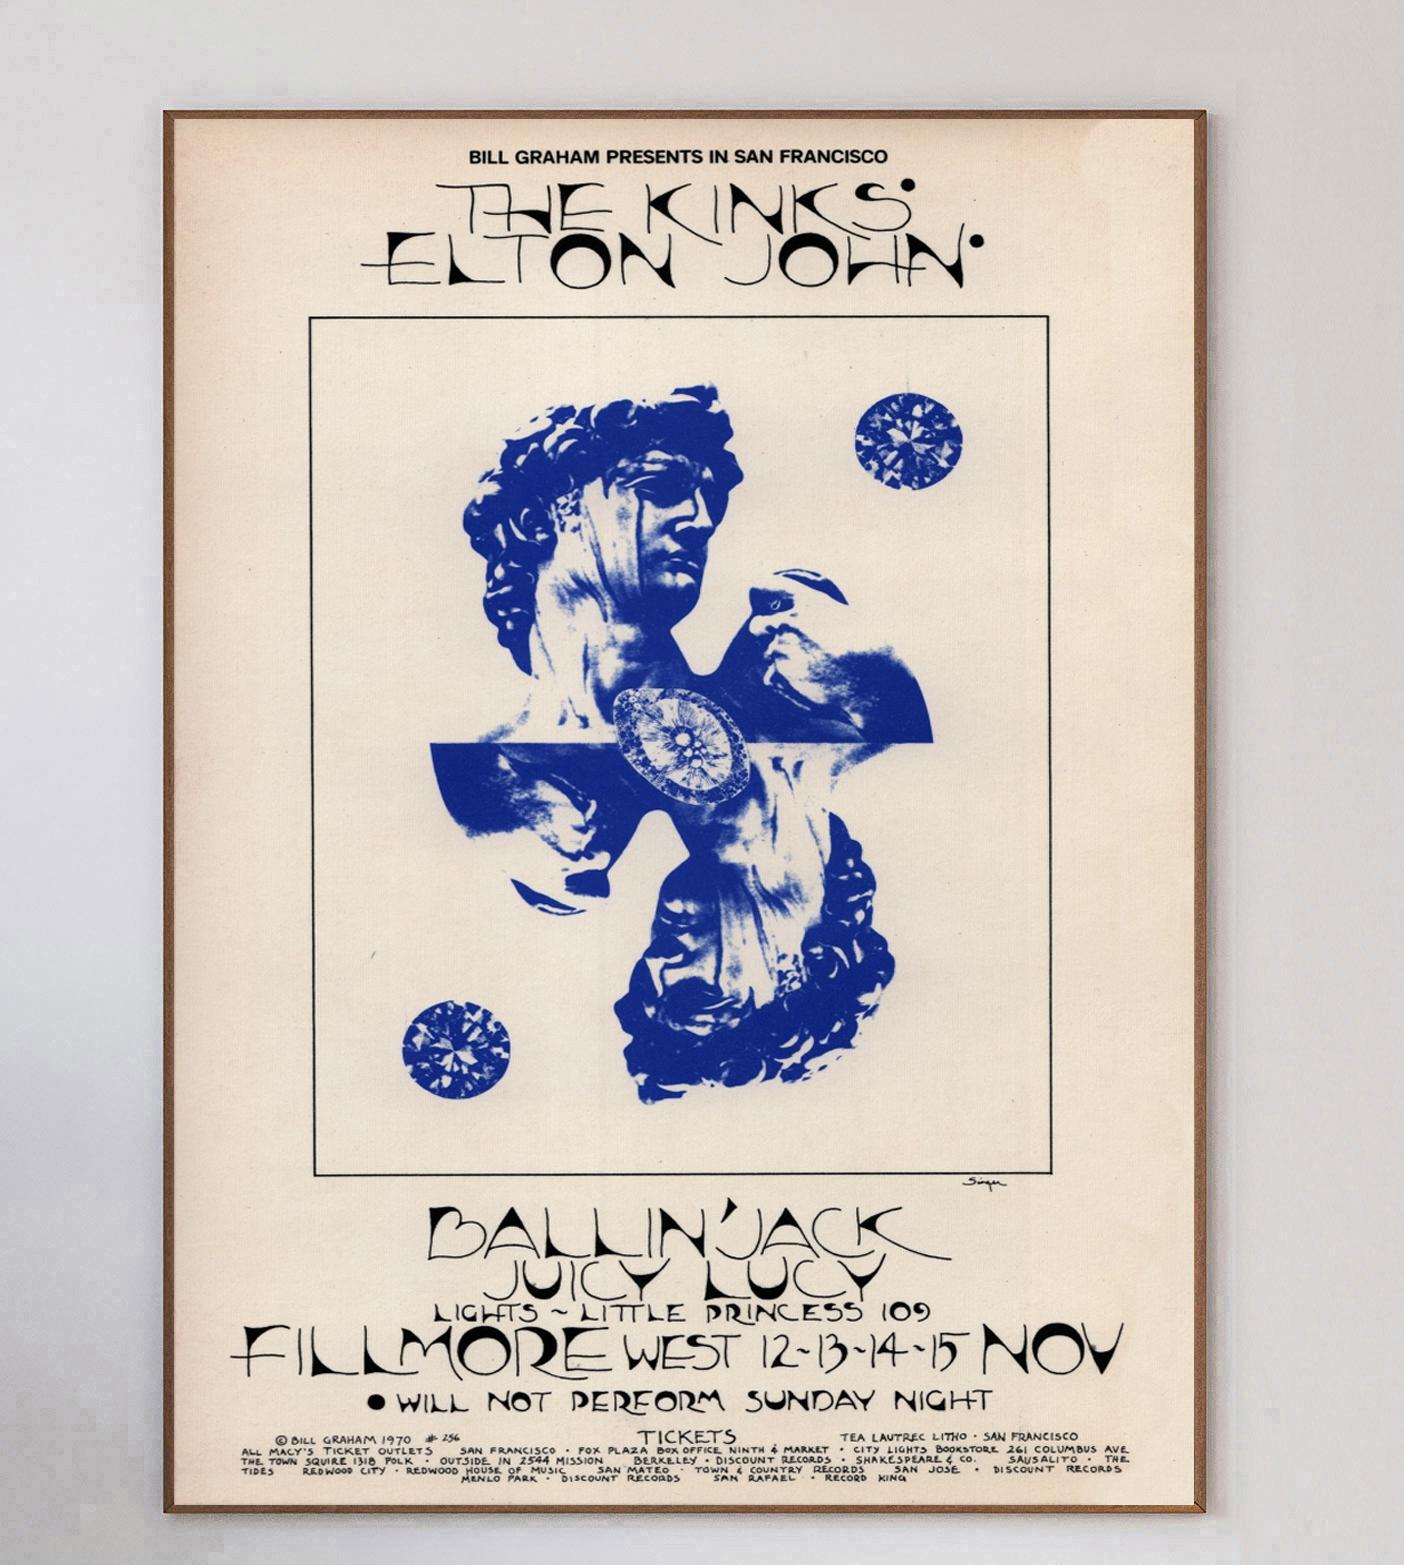 Dieses wunderschöne Plakat wurde 1970 von dem Konzertplakatkünstler David Singer entworfen, um ein Live-Konzert von The Kinks & Elton John im weltberühmten Fillmore West in San Francisco zu bewerben. Bill Graham-Veranstaltungen wie diese waren